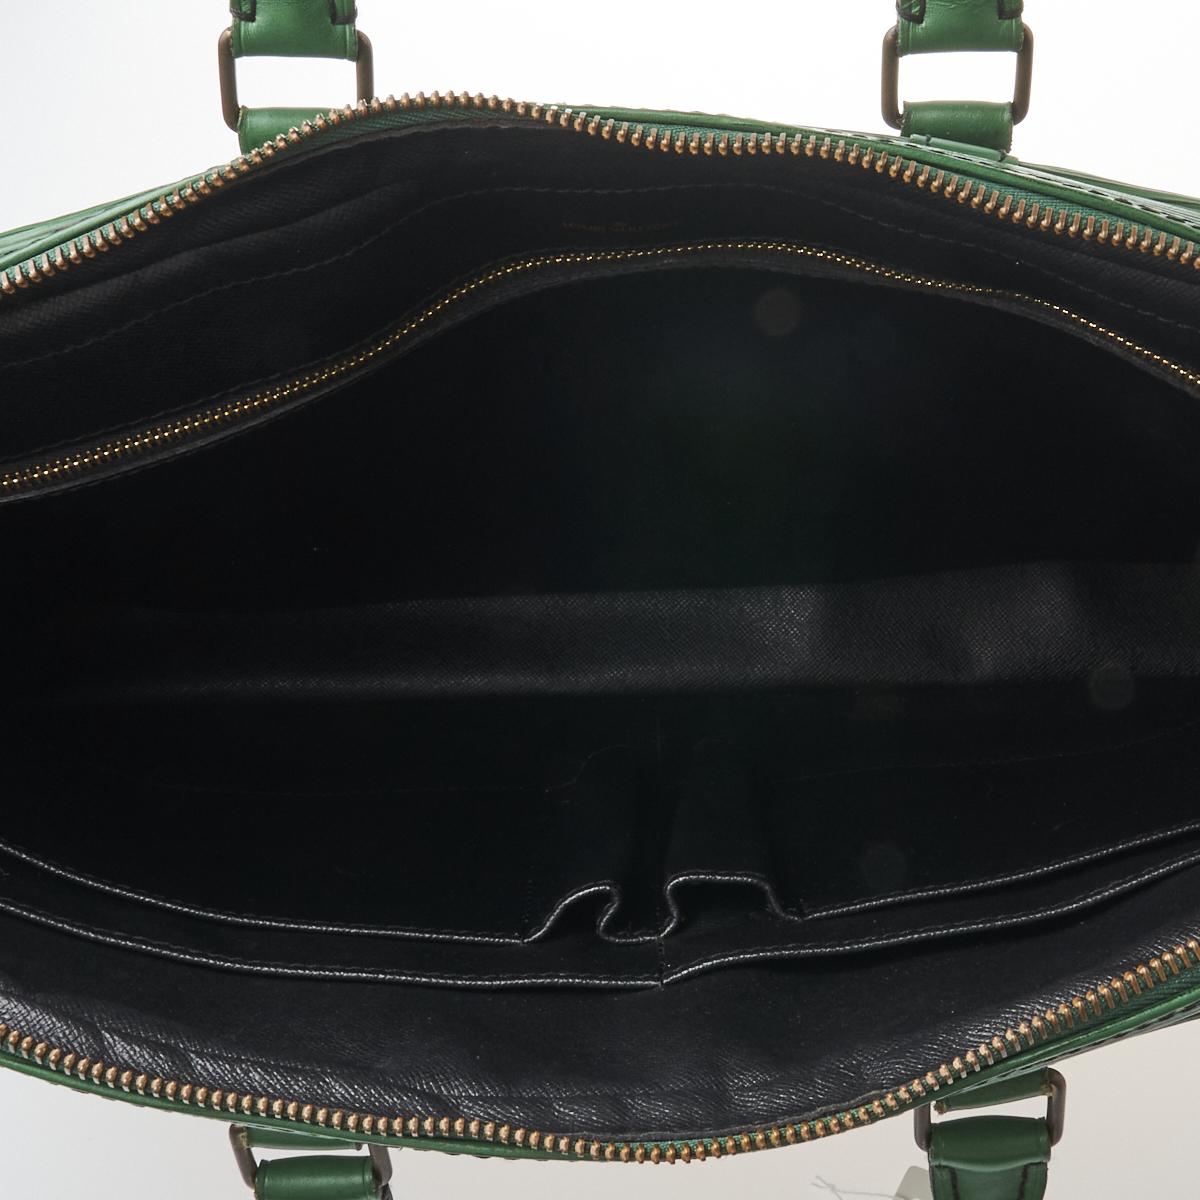 Porte-Documents Voyage Green Epi Leather Briefcase Bag – Poshbag